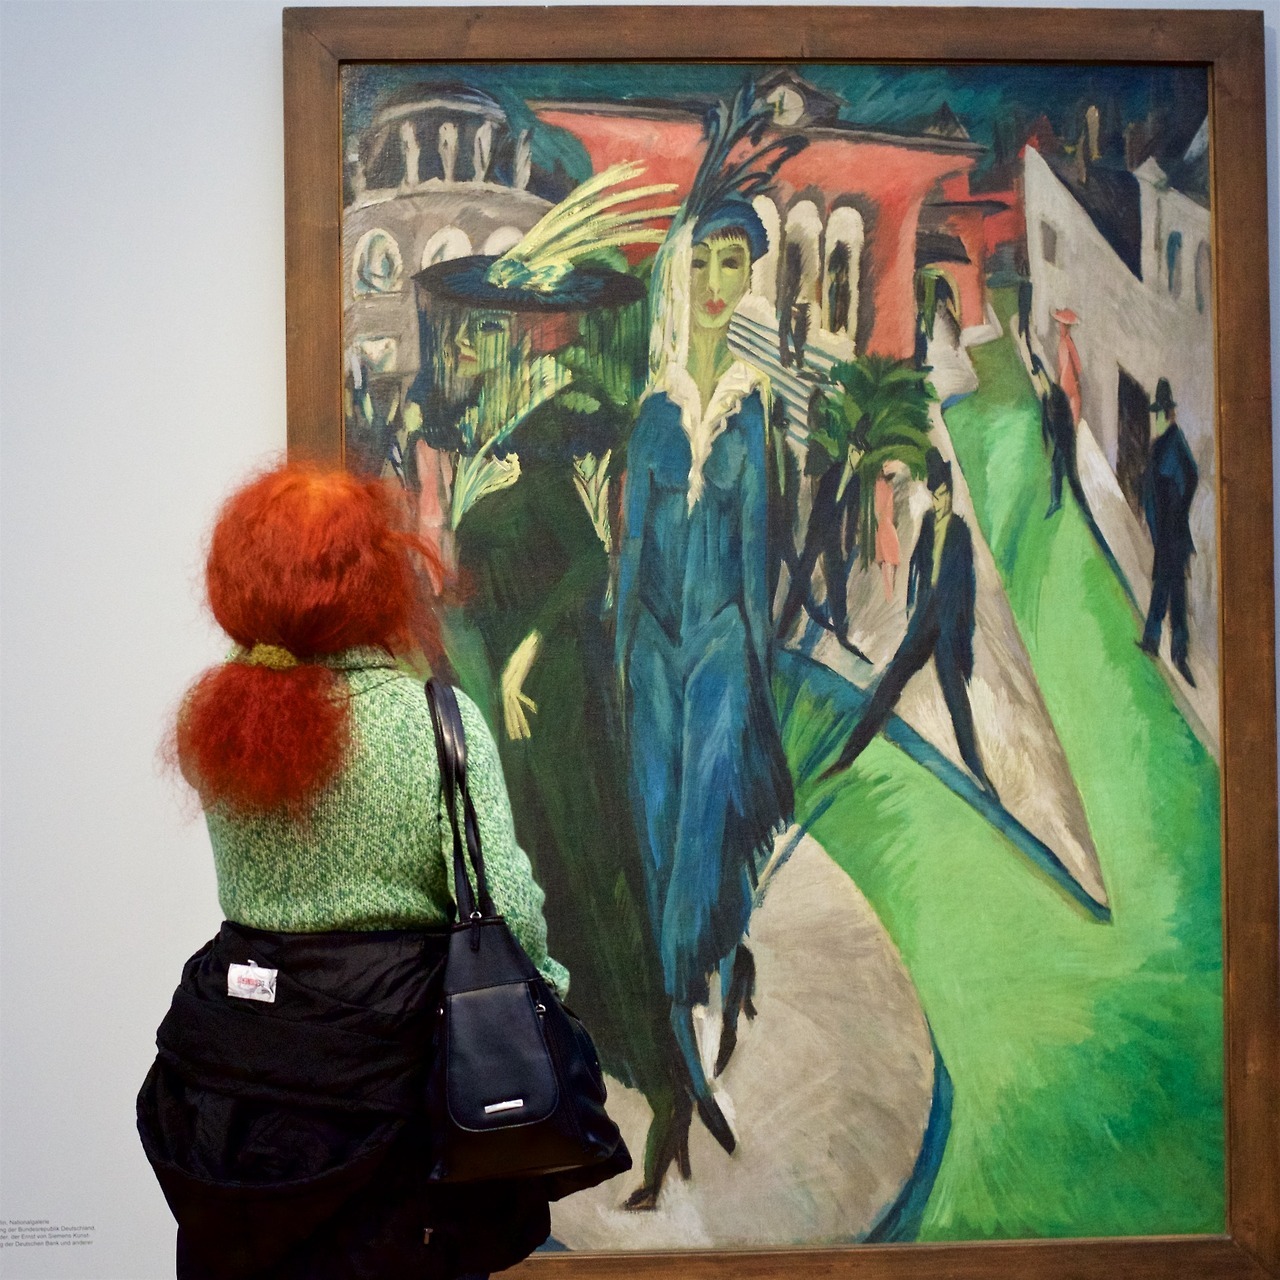 Австриец фотографирует посетителей музеев в сочетании с картинами